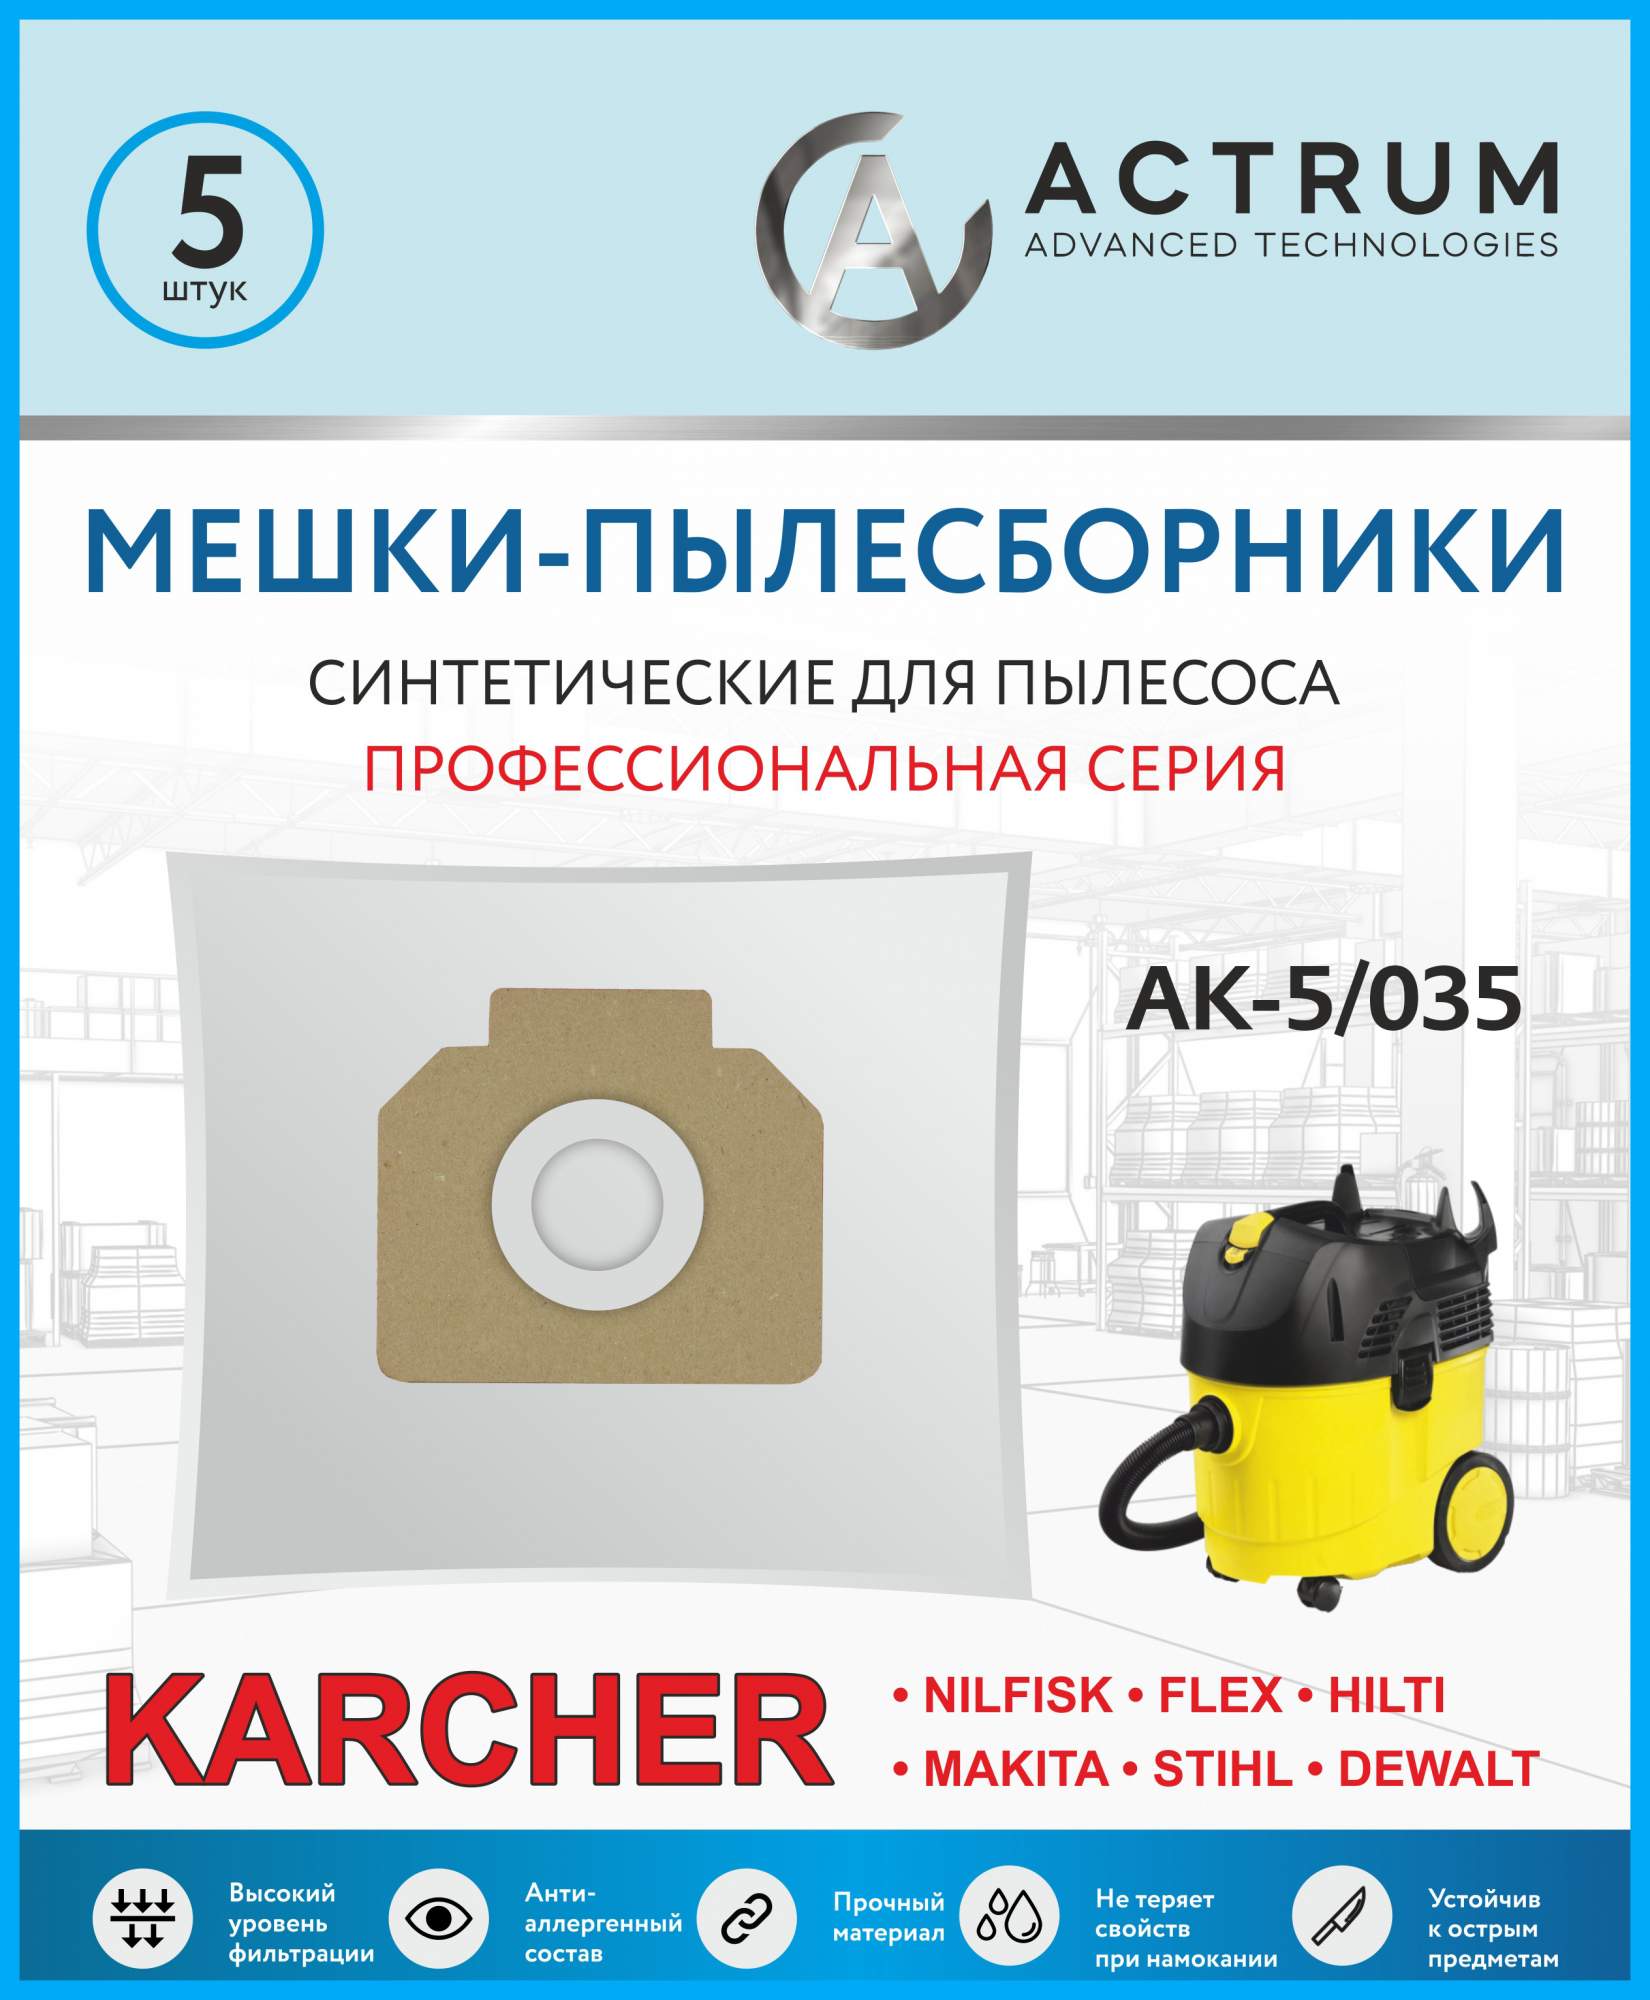 Пылесборник ACTRUM AK-5/035, купить в Москве, цены в интернет-магазинах на Мегамаркет